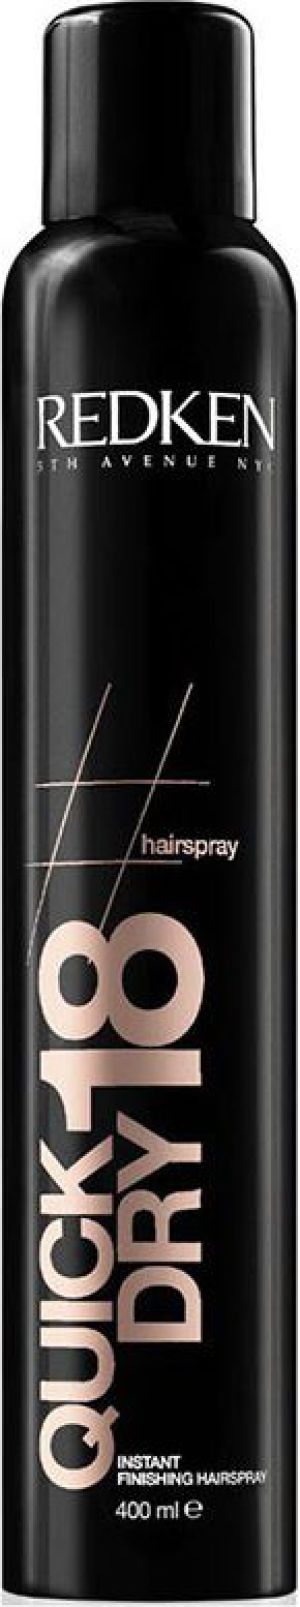 Redken Quick Dry 18 Hairspray lakier do włosów 400ml 1